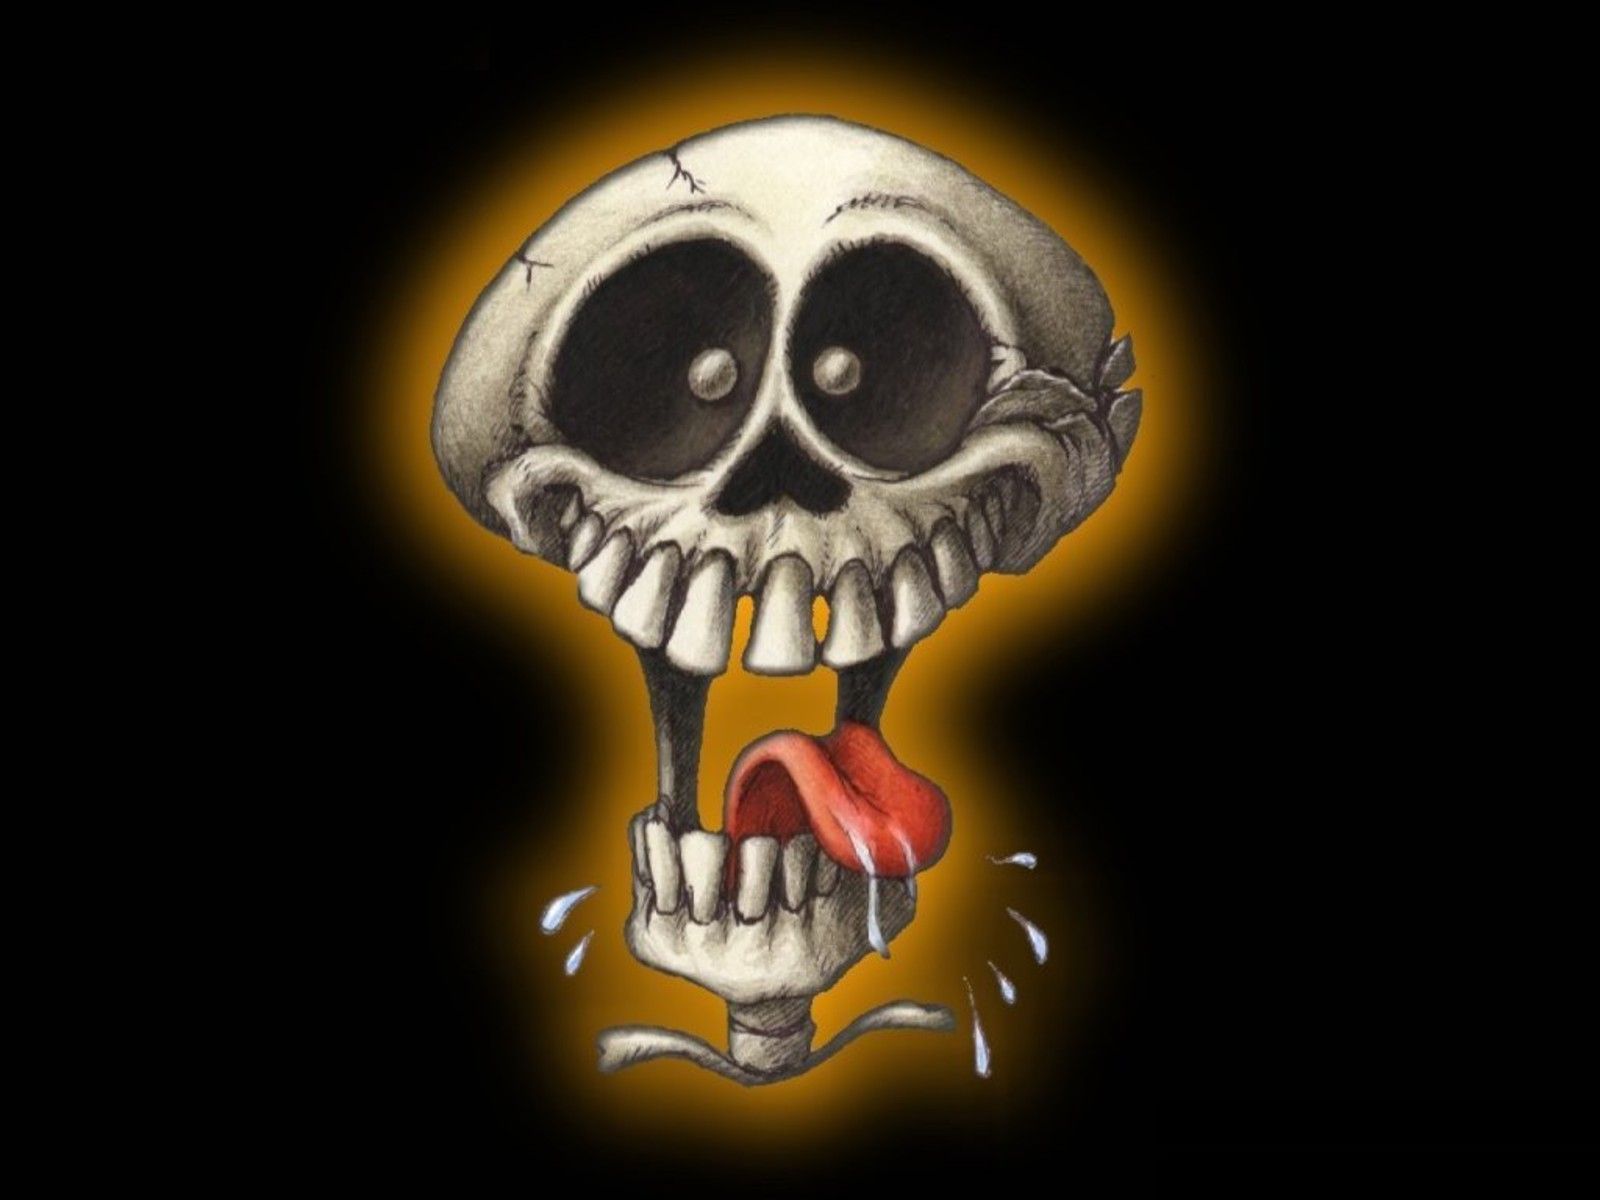 Funny Skull. Skull Wallpaper, Skull Artwork, Skull Picture